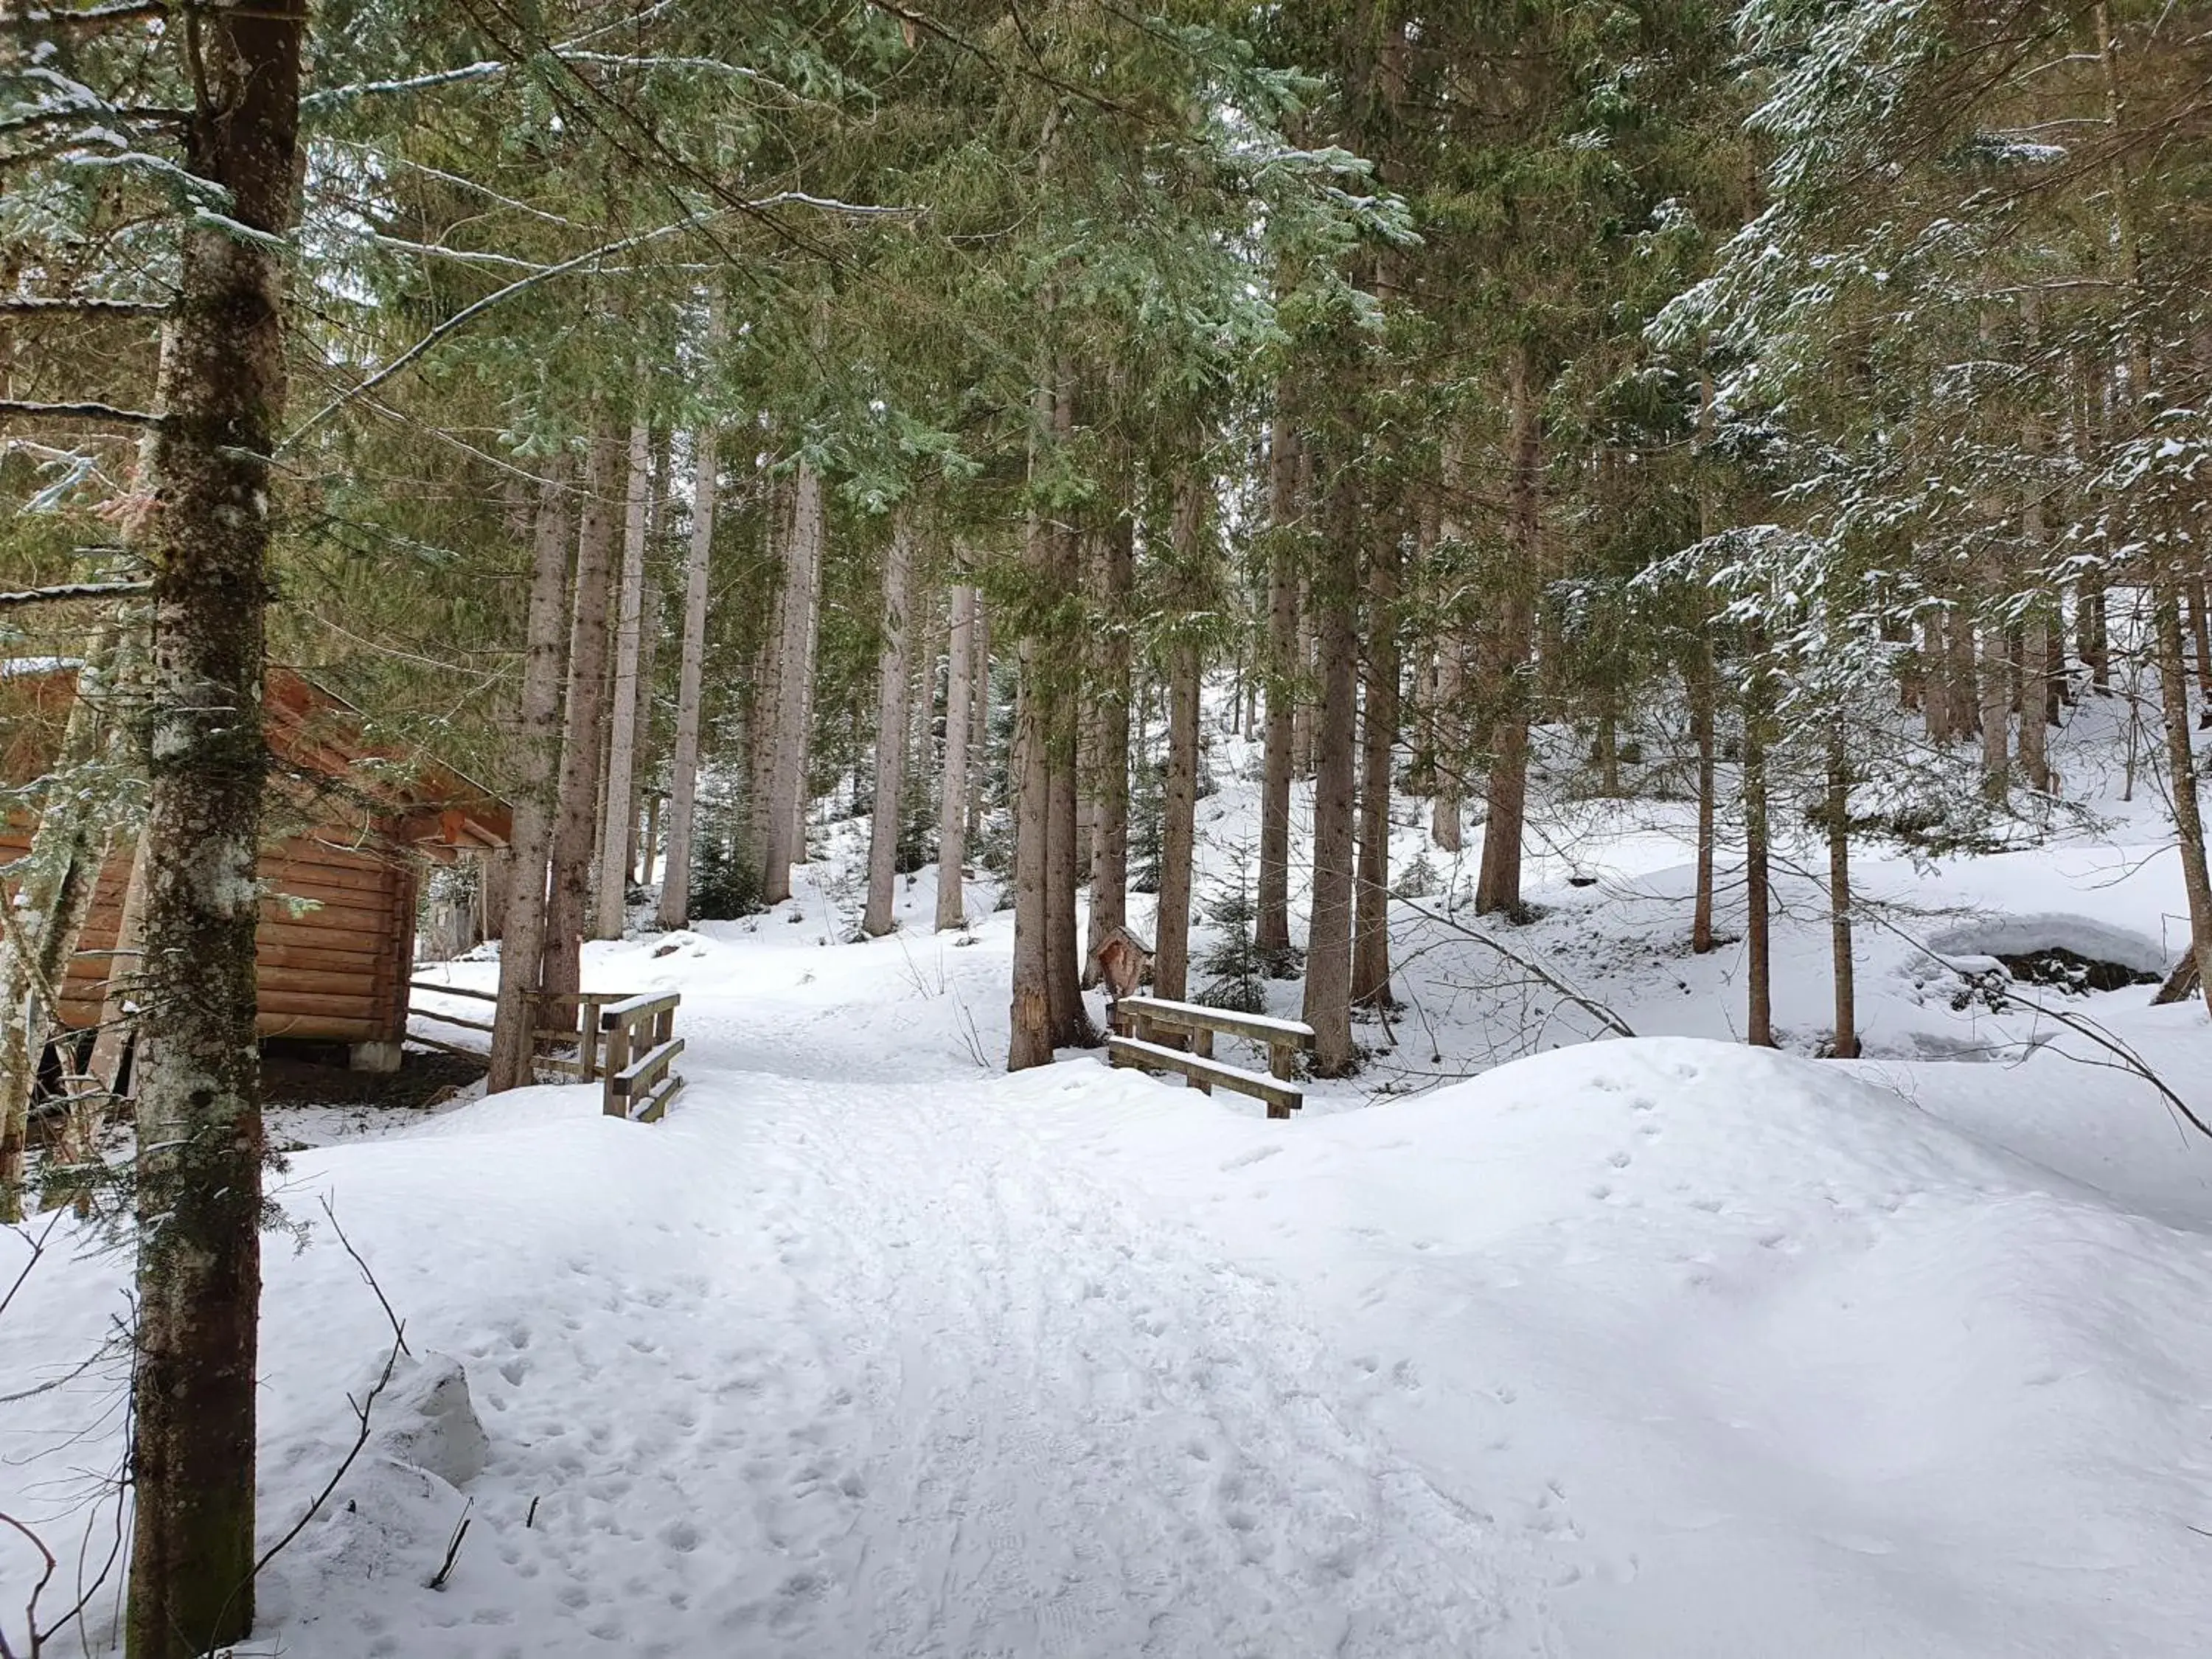 Nearby landmark, Winter in Alpenhof